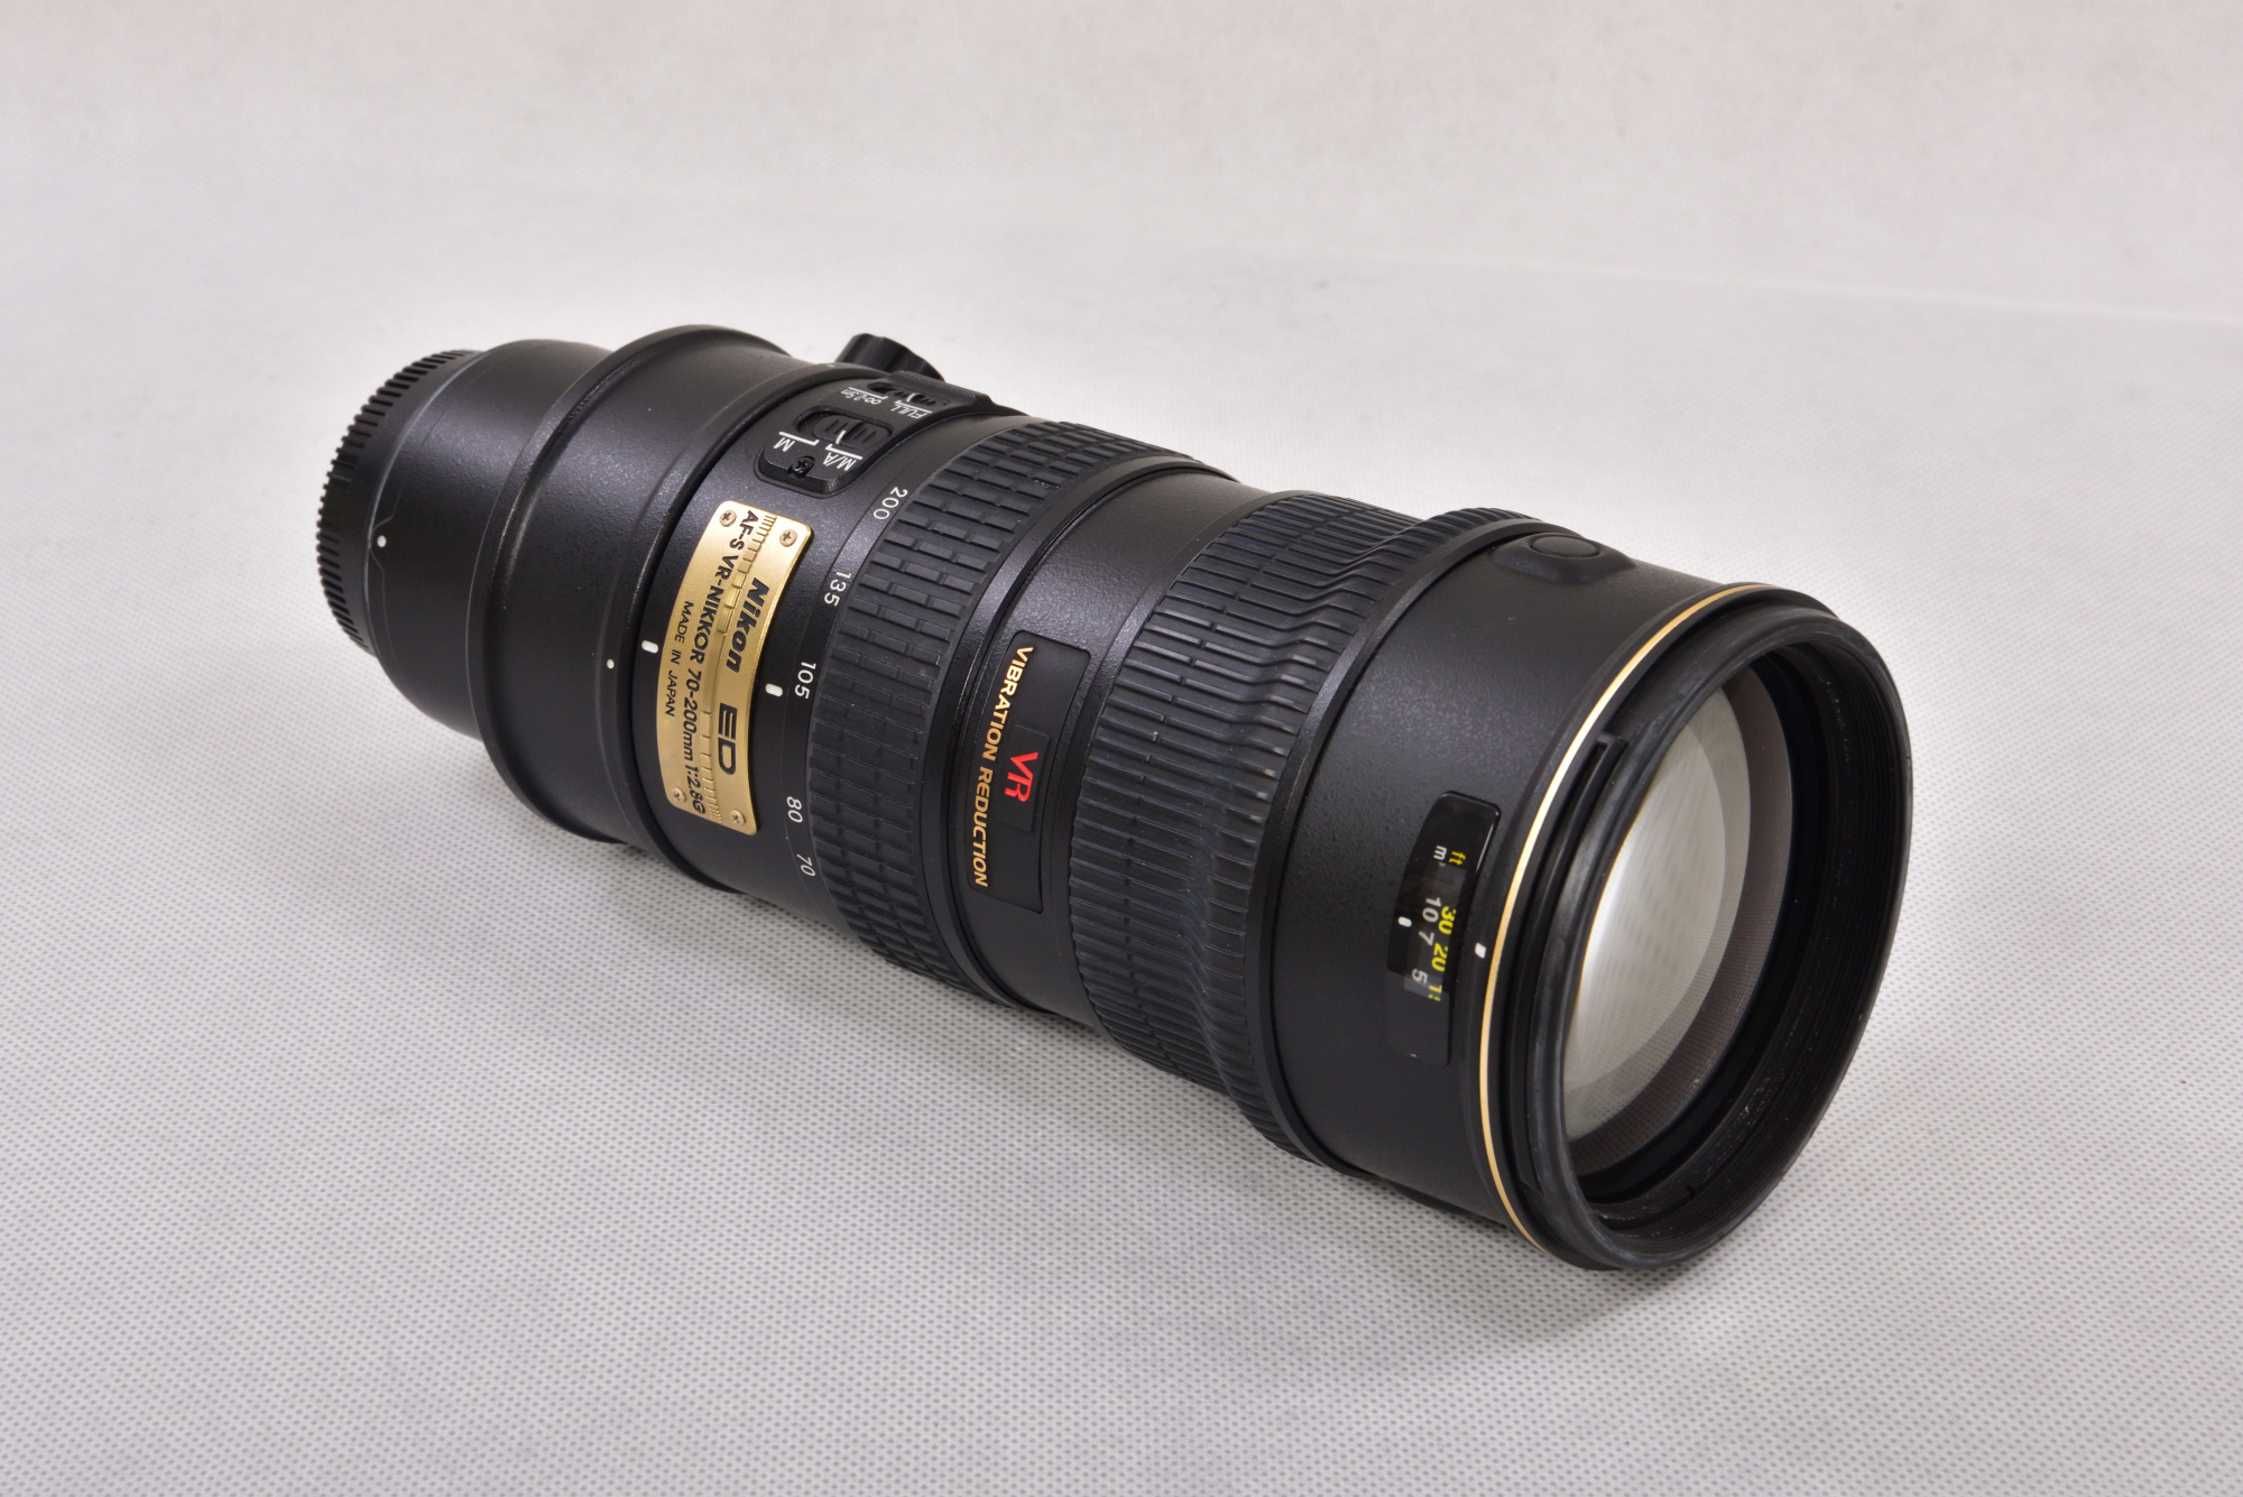 Nikon Nikkor AF-S 70-200 mm VR f/2.8 G stan jak NOWY, super ostry